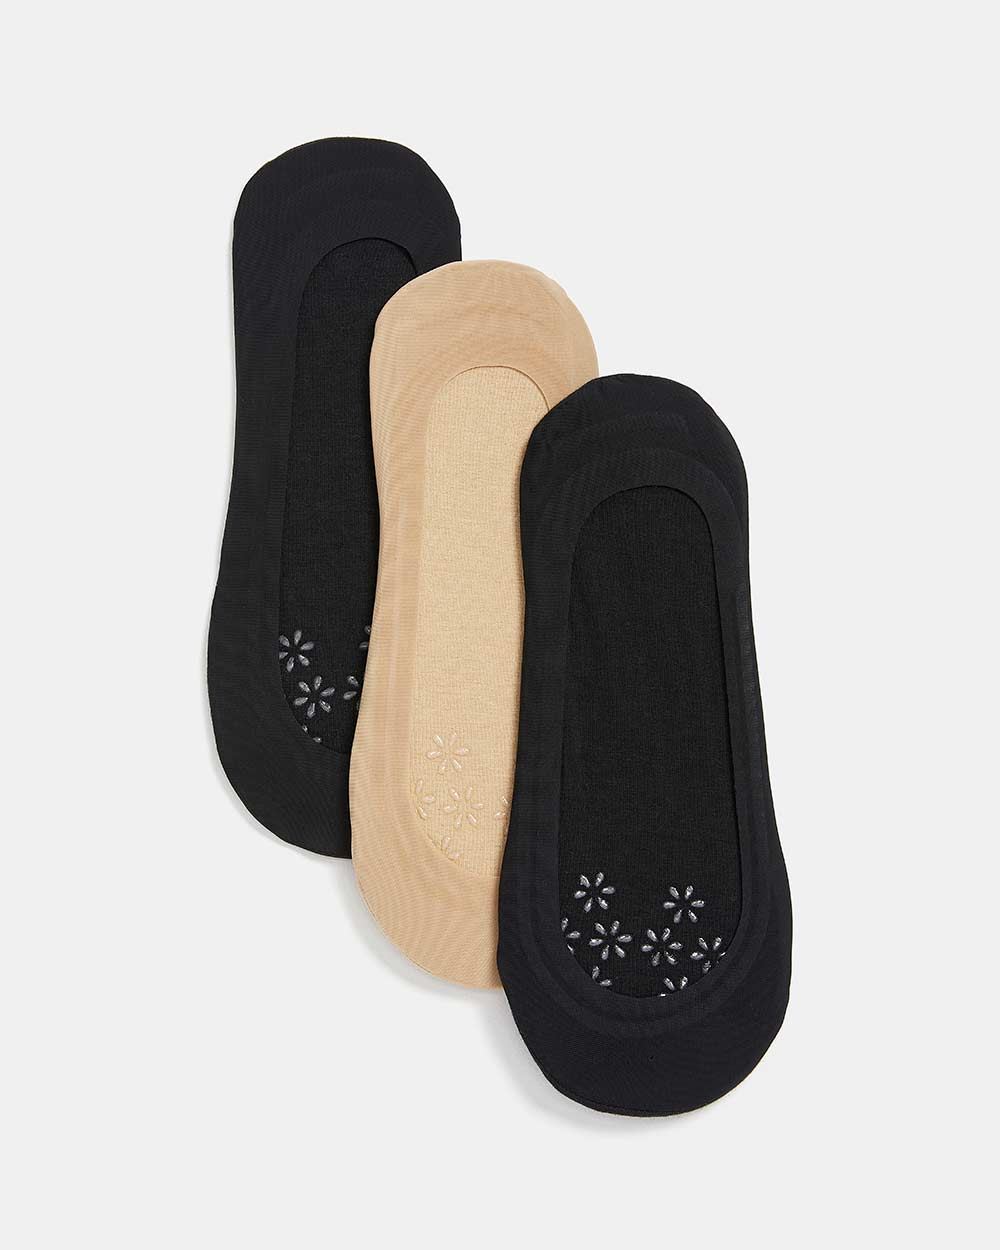 No-Show Anti-Slip Mesh Socks - 3 Pairs